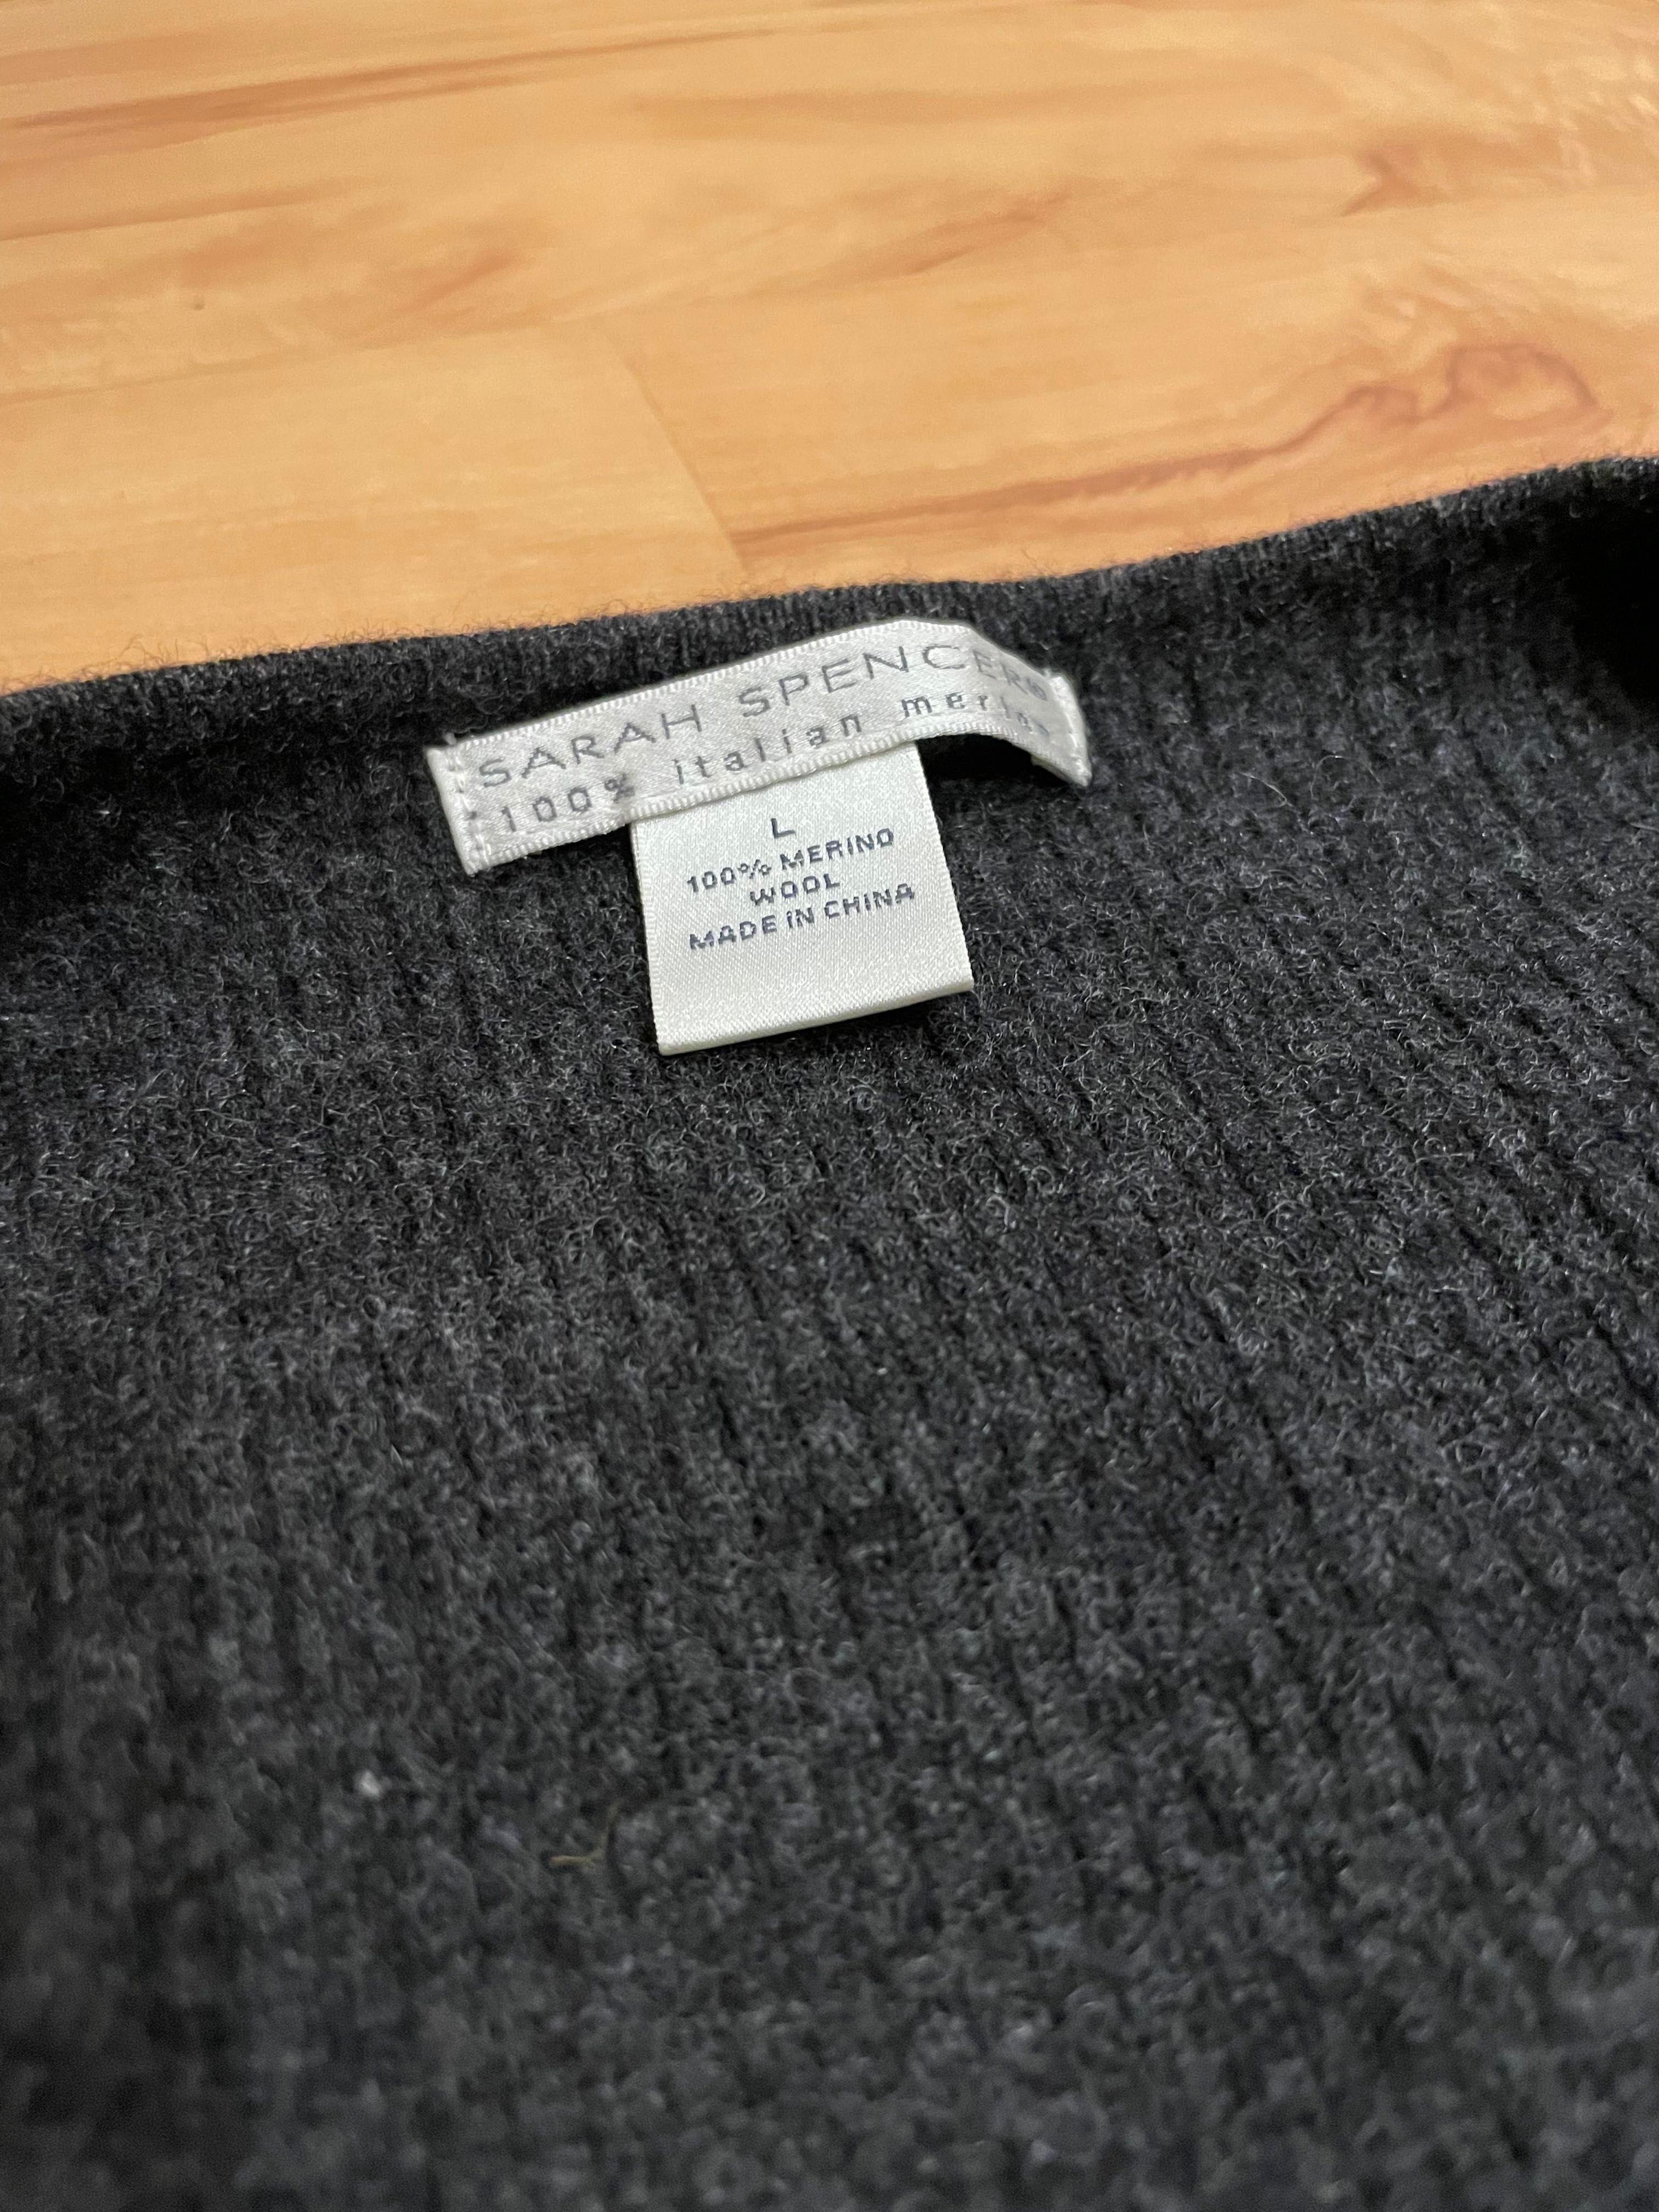 Wełna merino sweter kardigan italian merino L 40 jak nowy
100% wełna